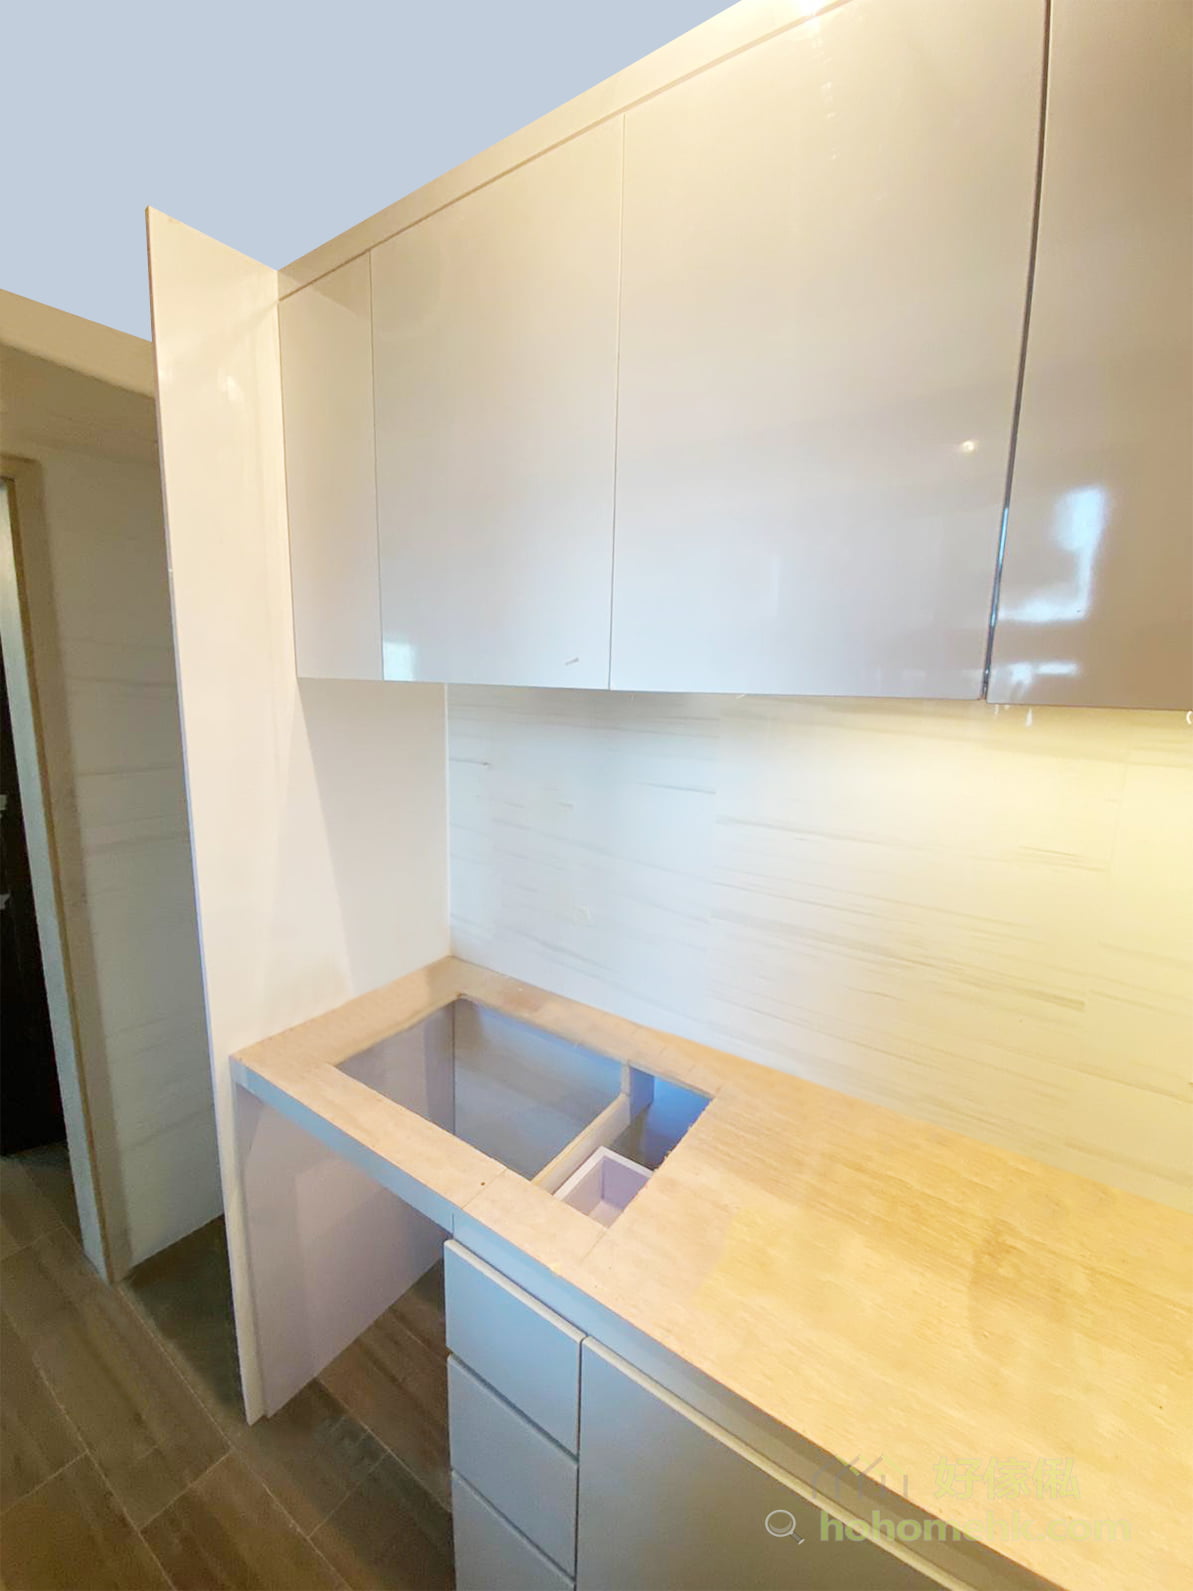 光面的廚具櫃門，容易打理，用抹布清潔便可；淺灰色櫃門有放大視覺空間的效果，但又不會過份刺眼，充滿現代感